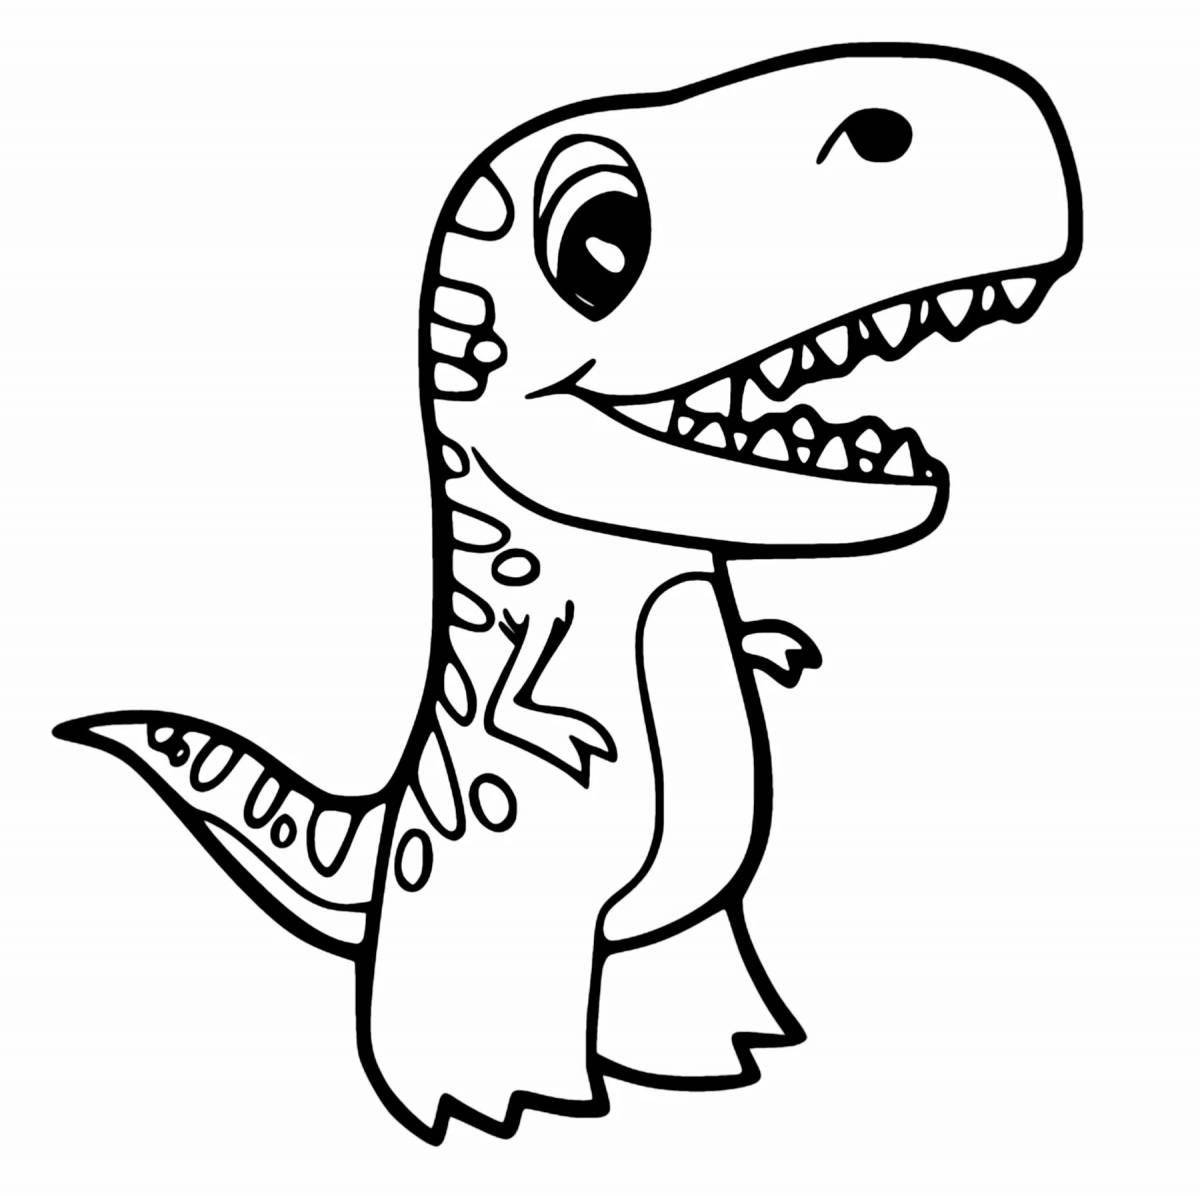 Coloring book playful dino rex